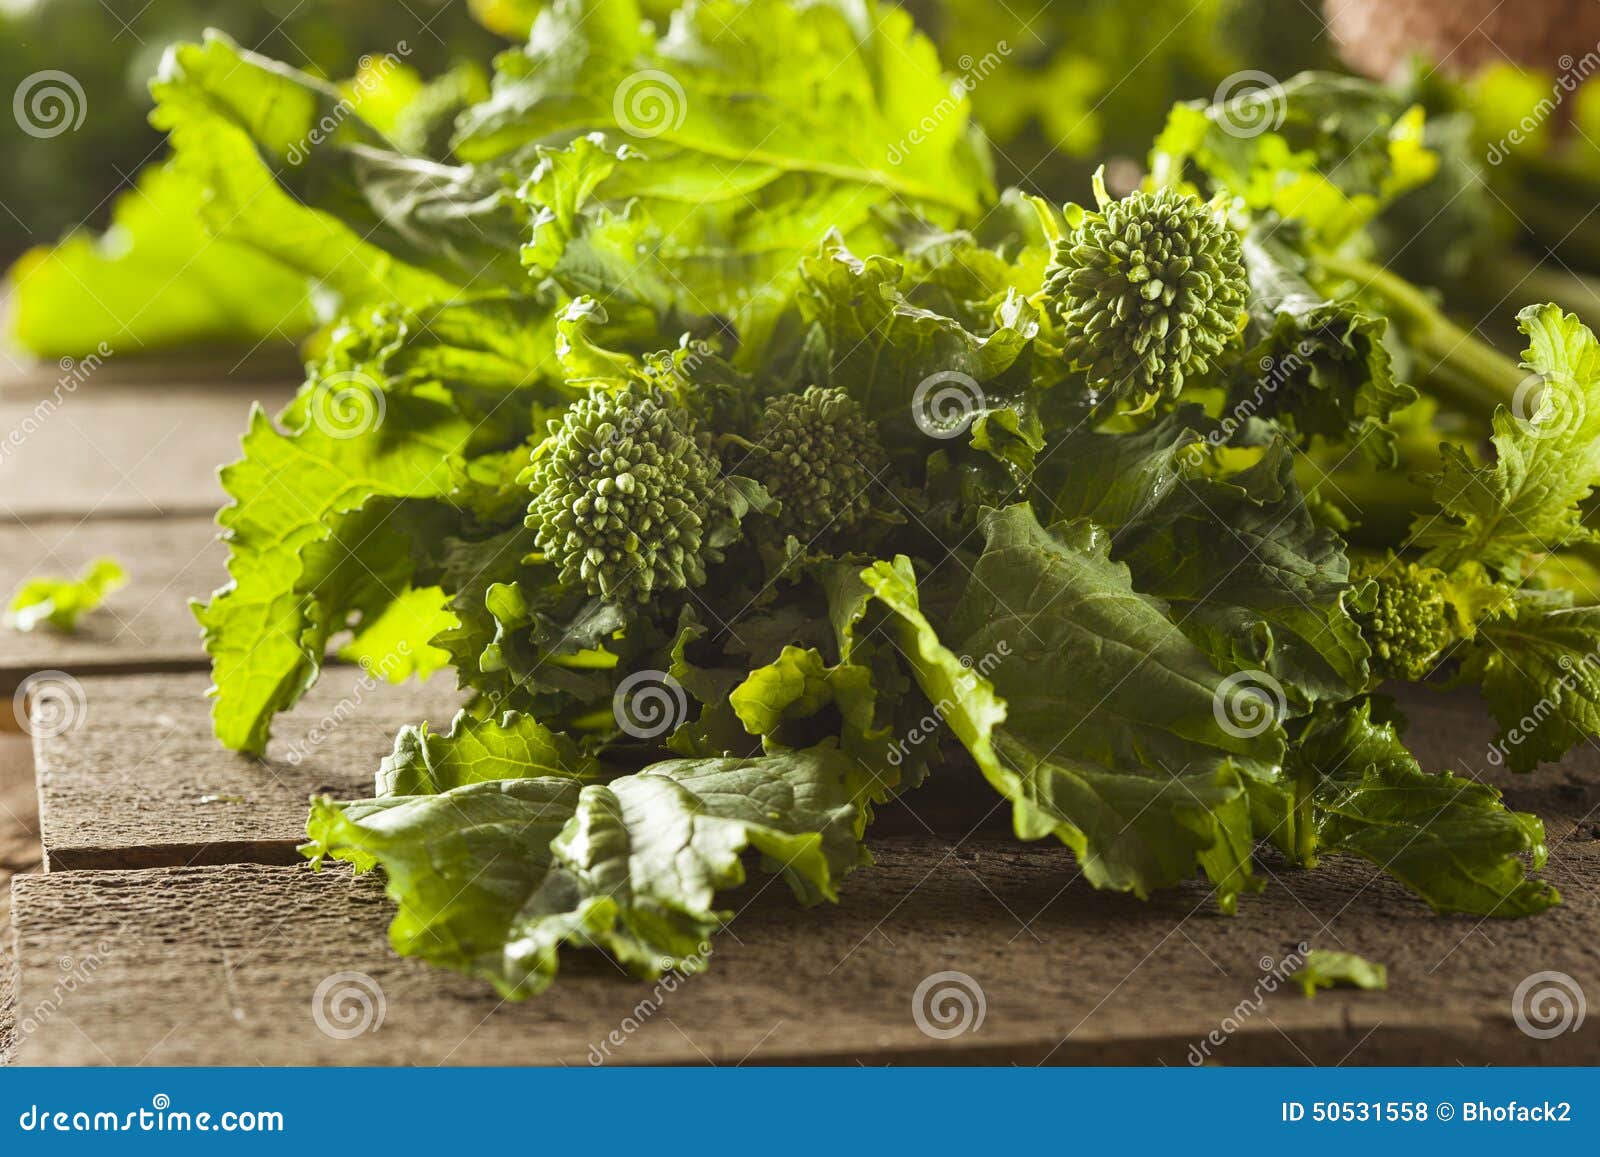 organic raw green broccoli rabe rapini